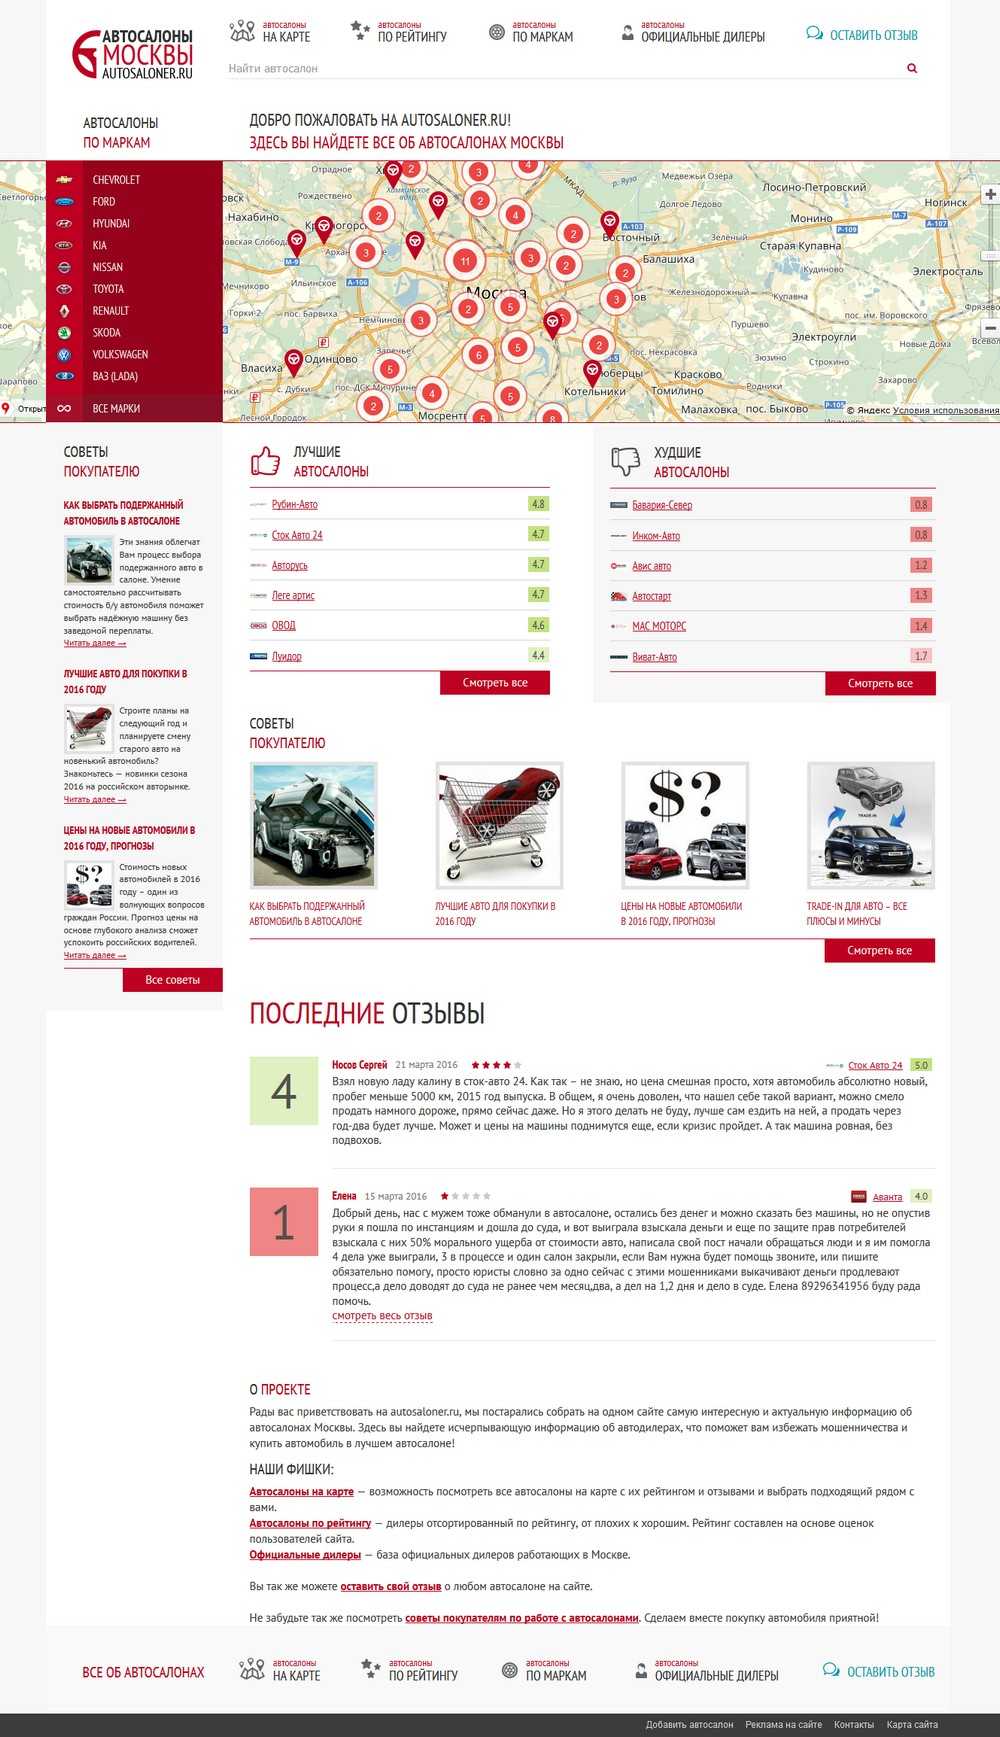 Автосалоны москвы: список официальных дилеров с адресами и телефонами